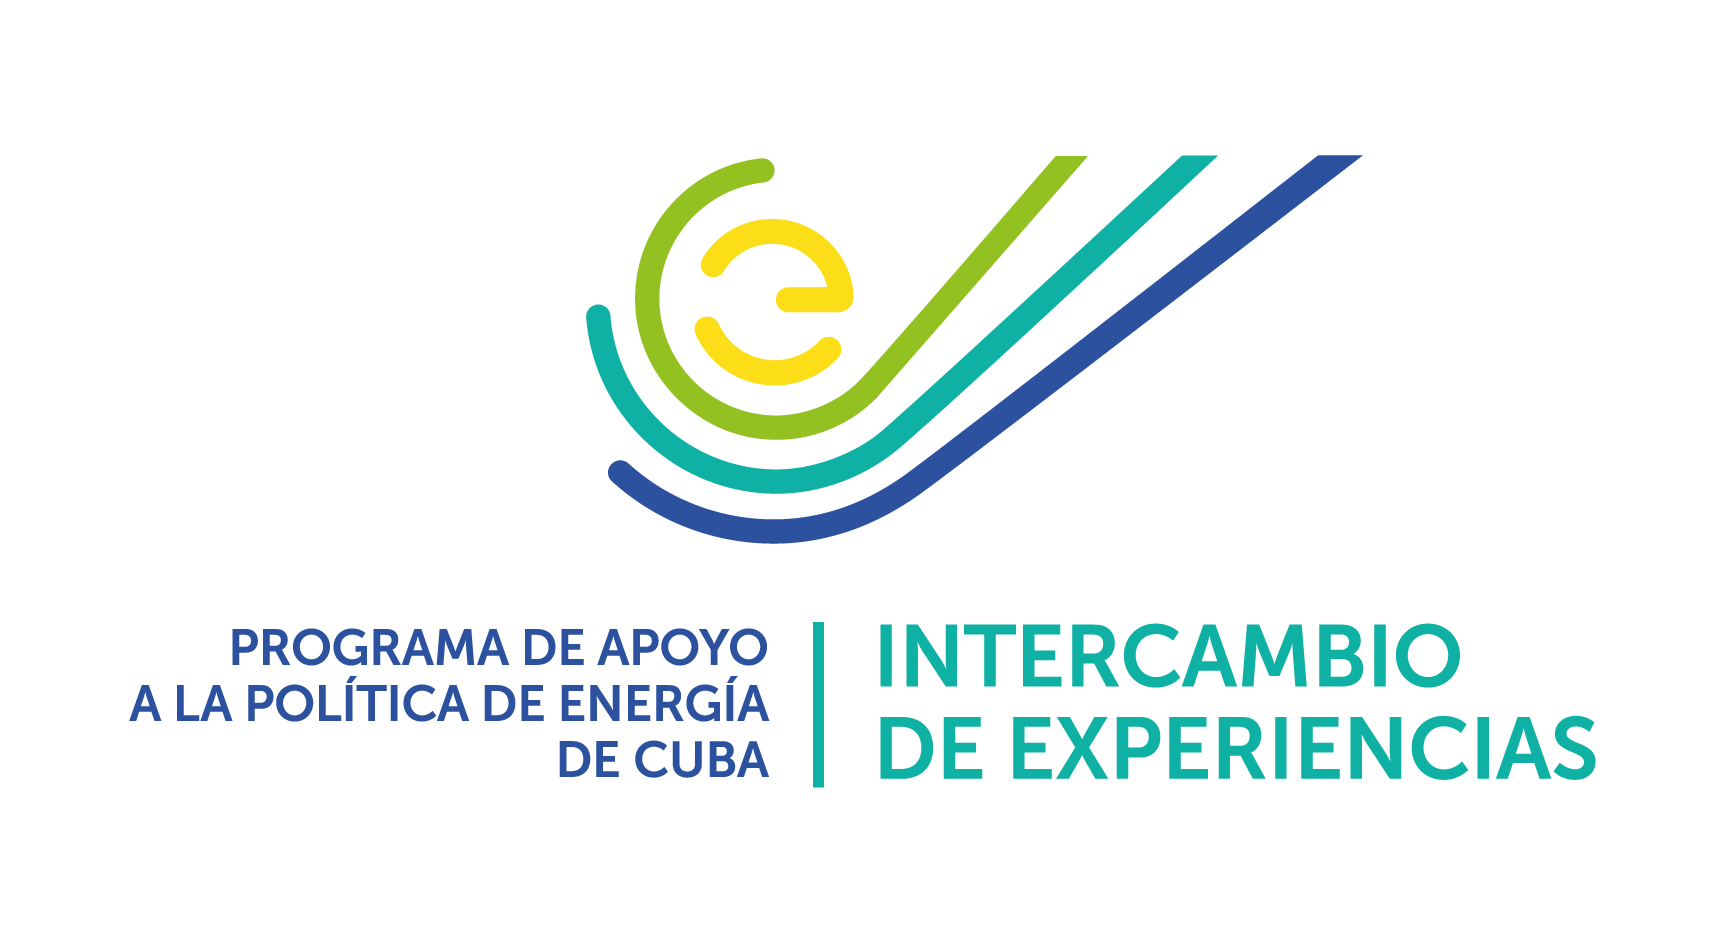 Intercambio de experiencias - Programa de apoyo a la política de energía de Cuba